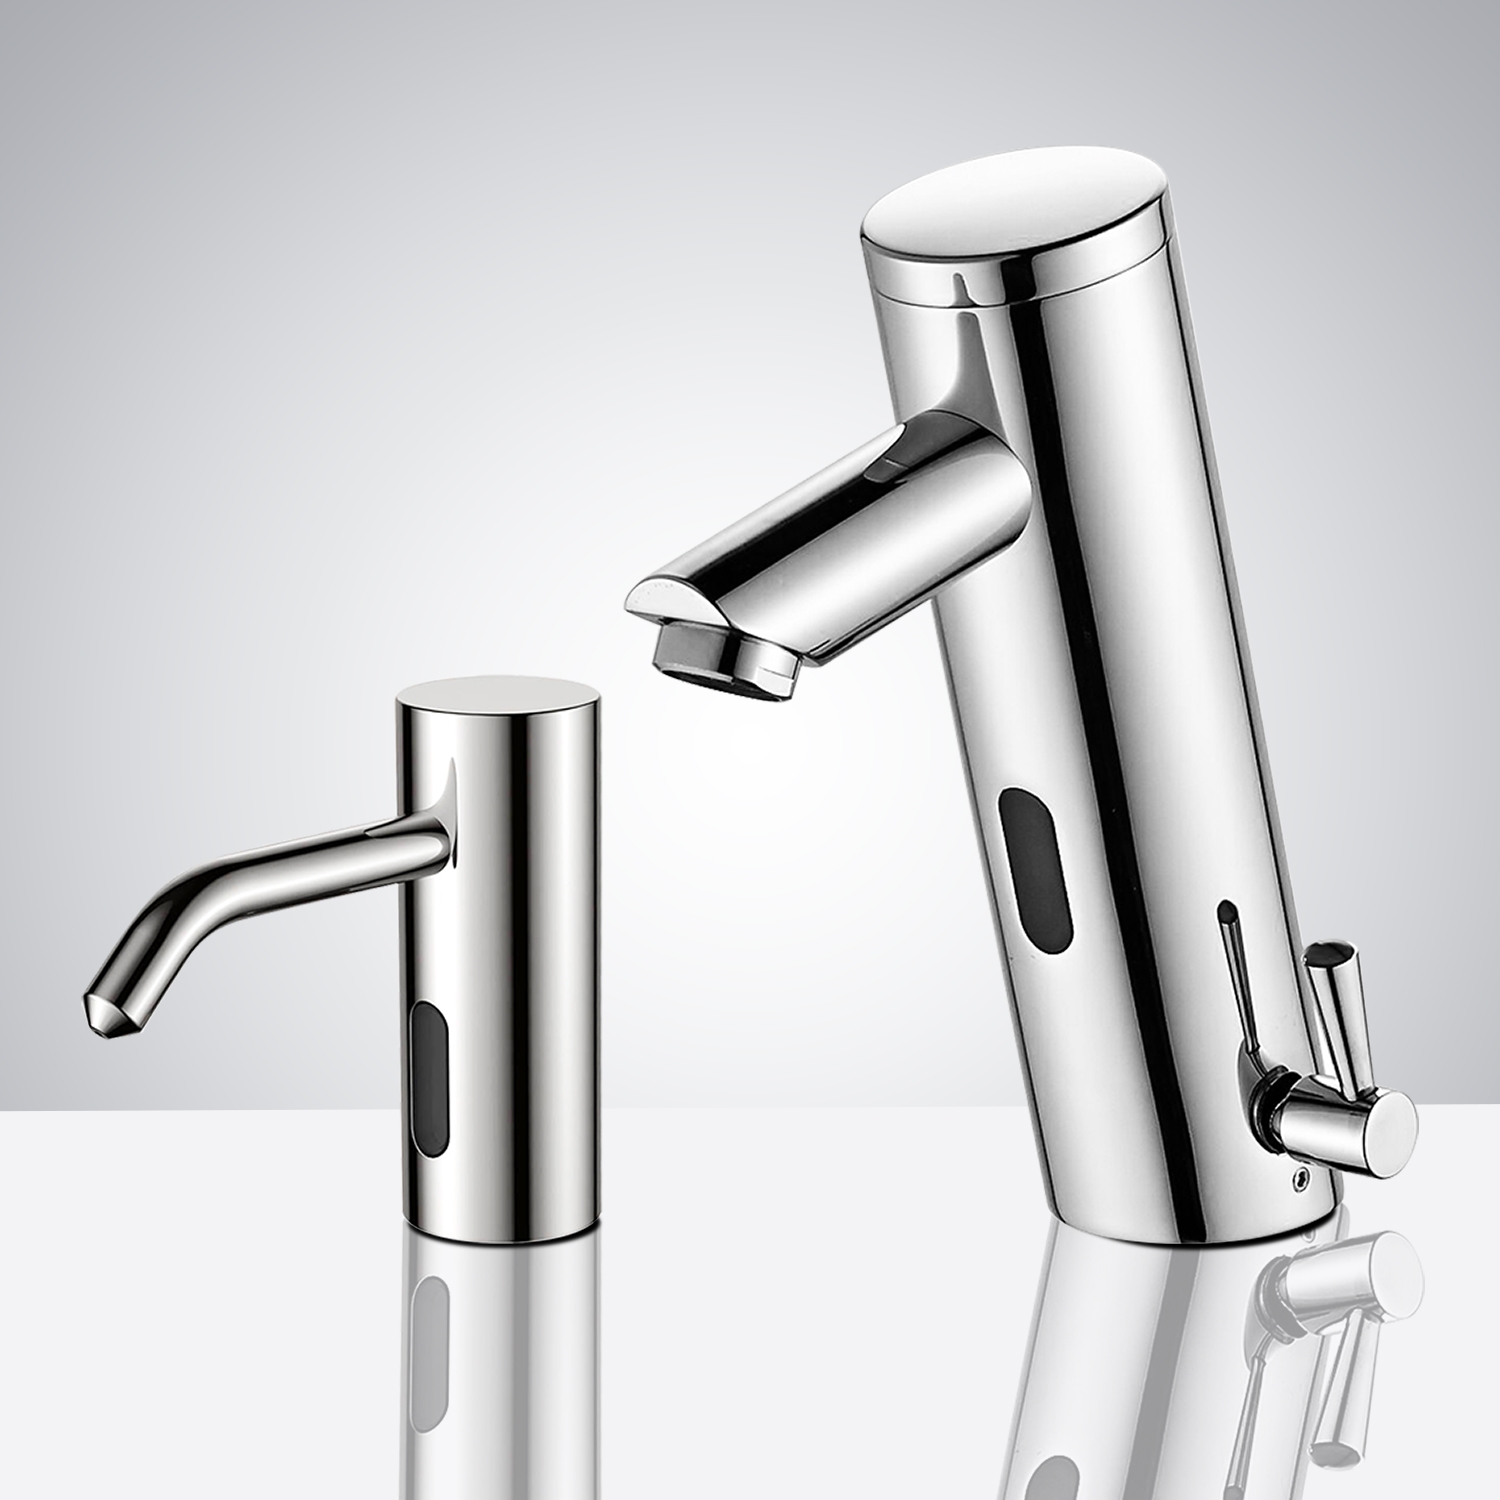 DUPLICATE Fontana Creteil Motion Sensor Faucet & Automatic Soap Dispenser for Restrooms